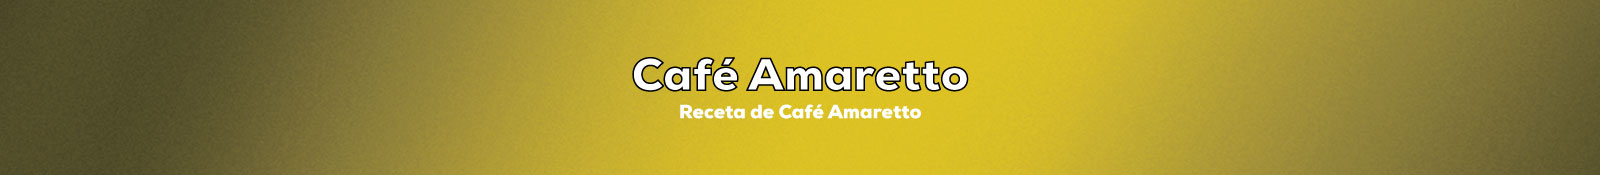 Preparar Café Amaretto